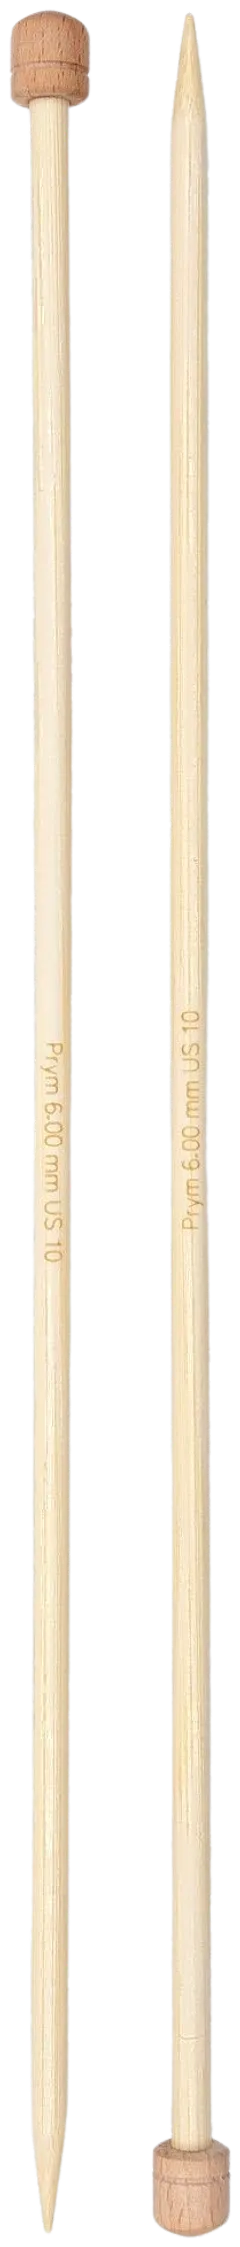 Prym neulepuikko 6,0 33cm bambu - 2